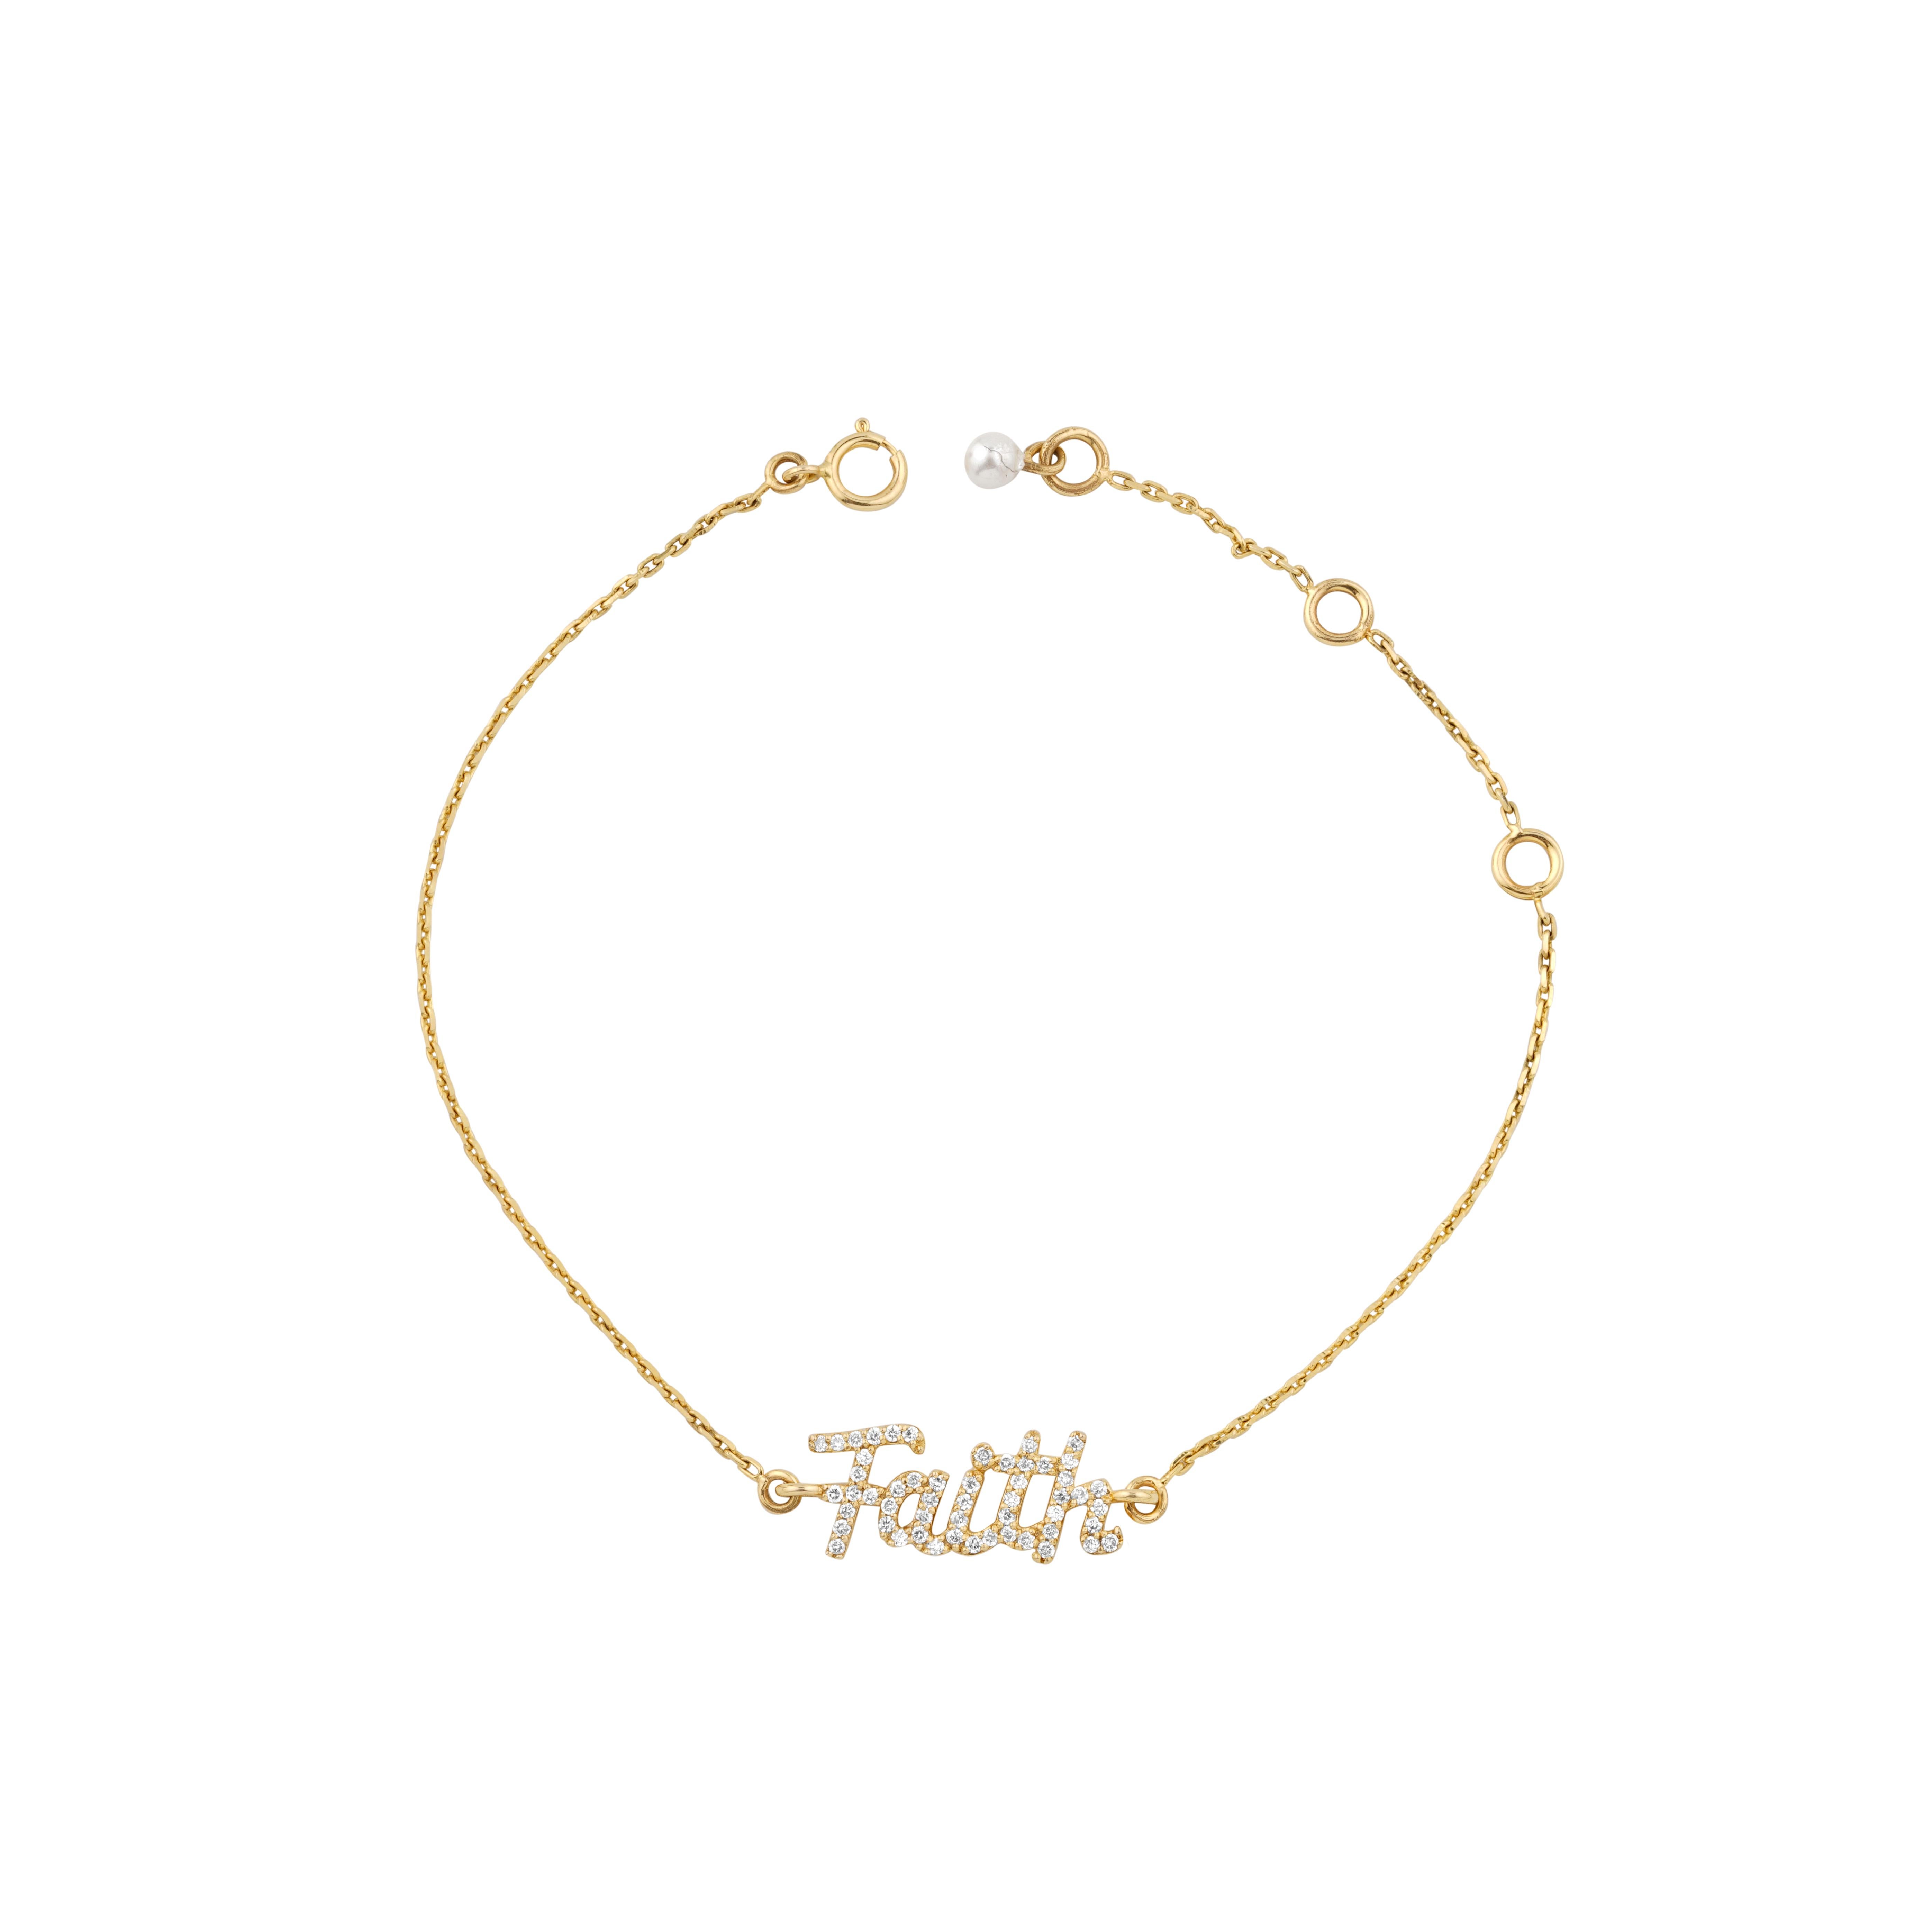 Diamond Faith Charm Bracelet features a dainty bracelet with the word 